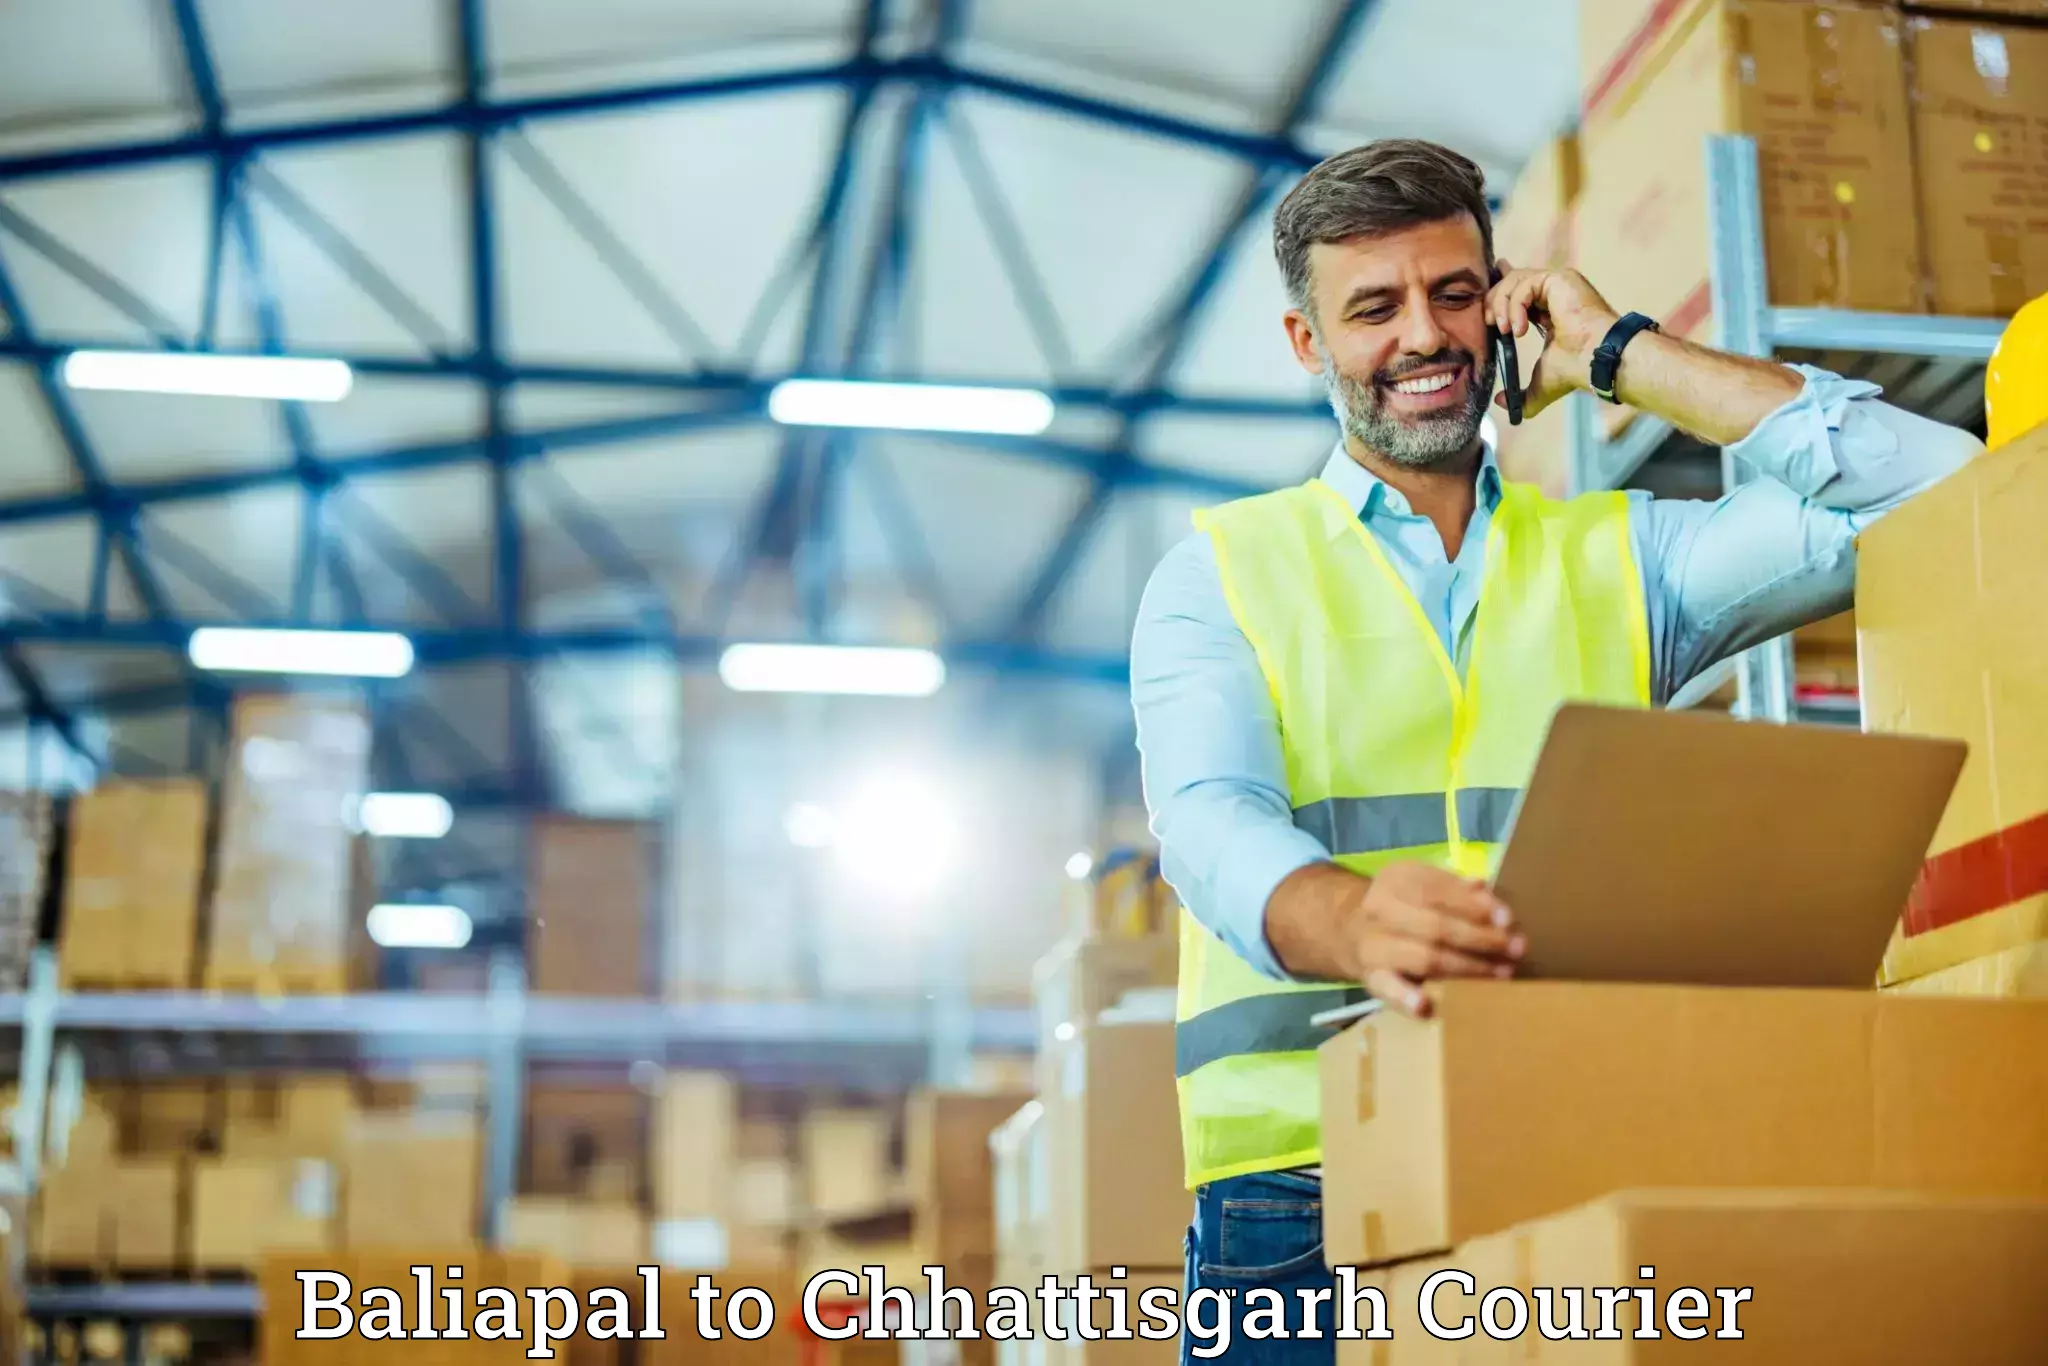 Furniture transport company Baliapal to Pakhanjur